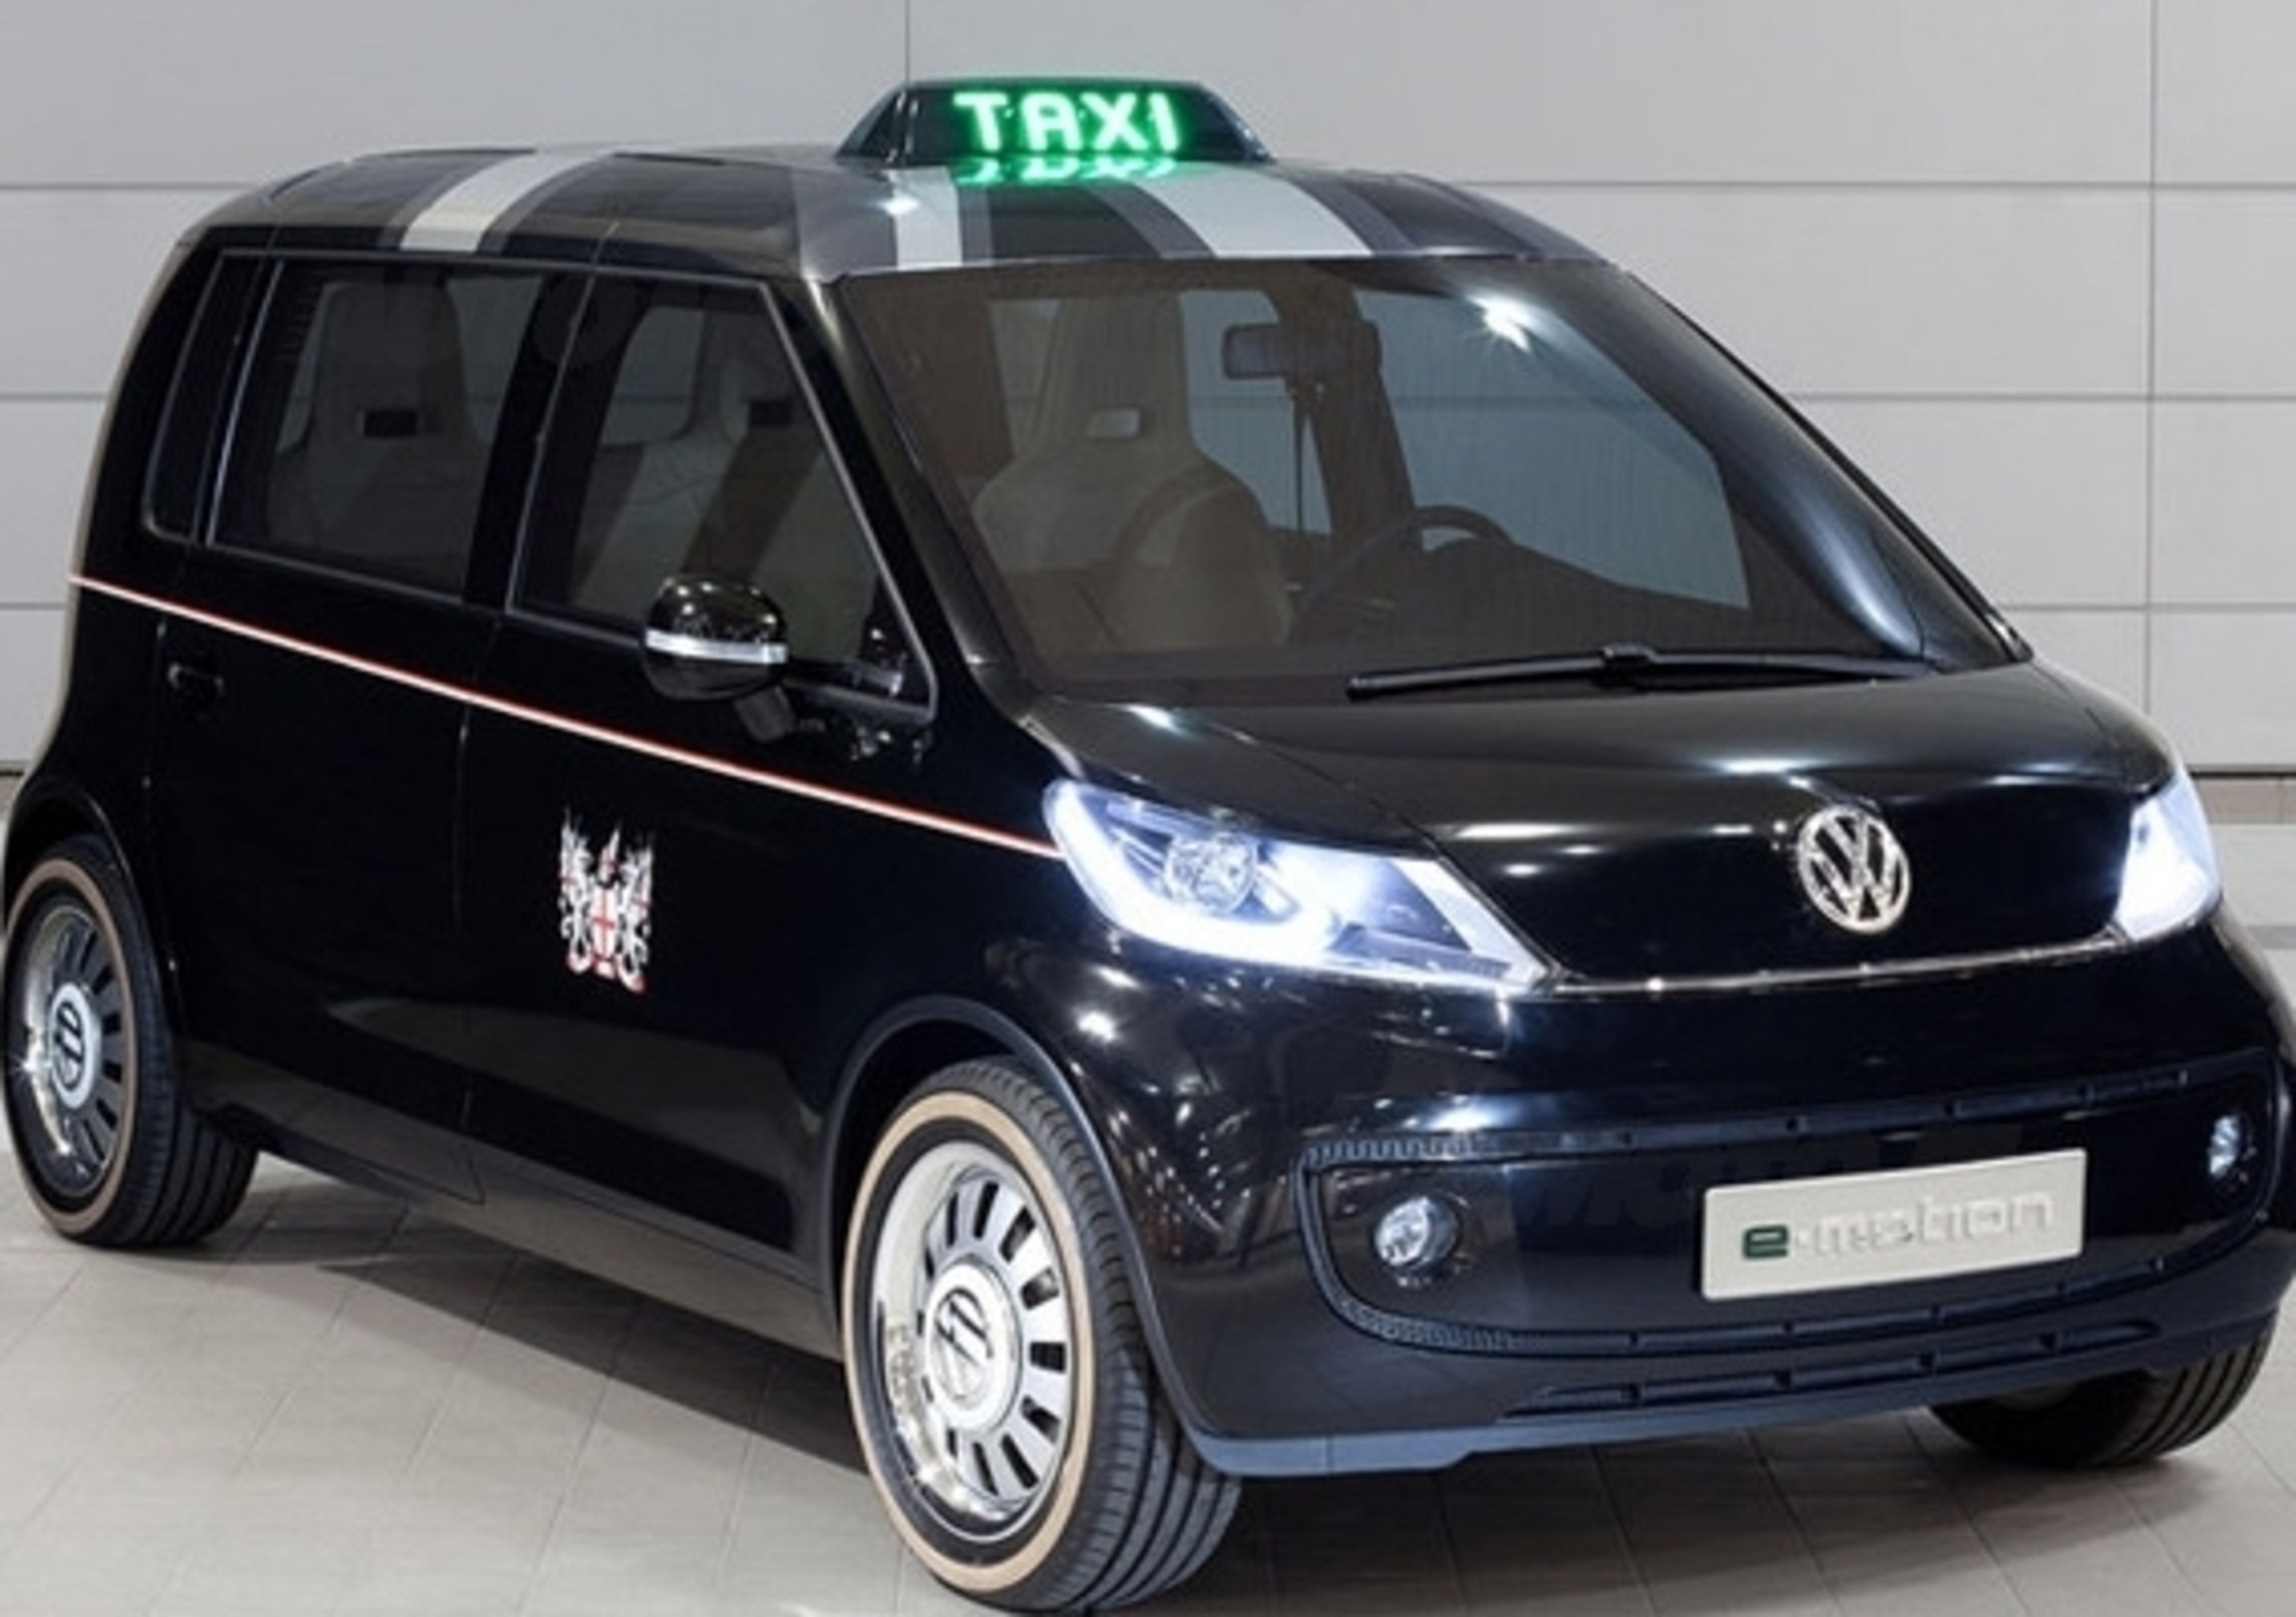 Volkswagen Taxi Concept